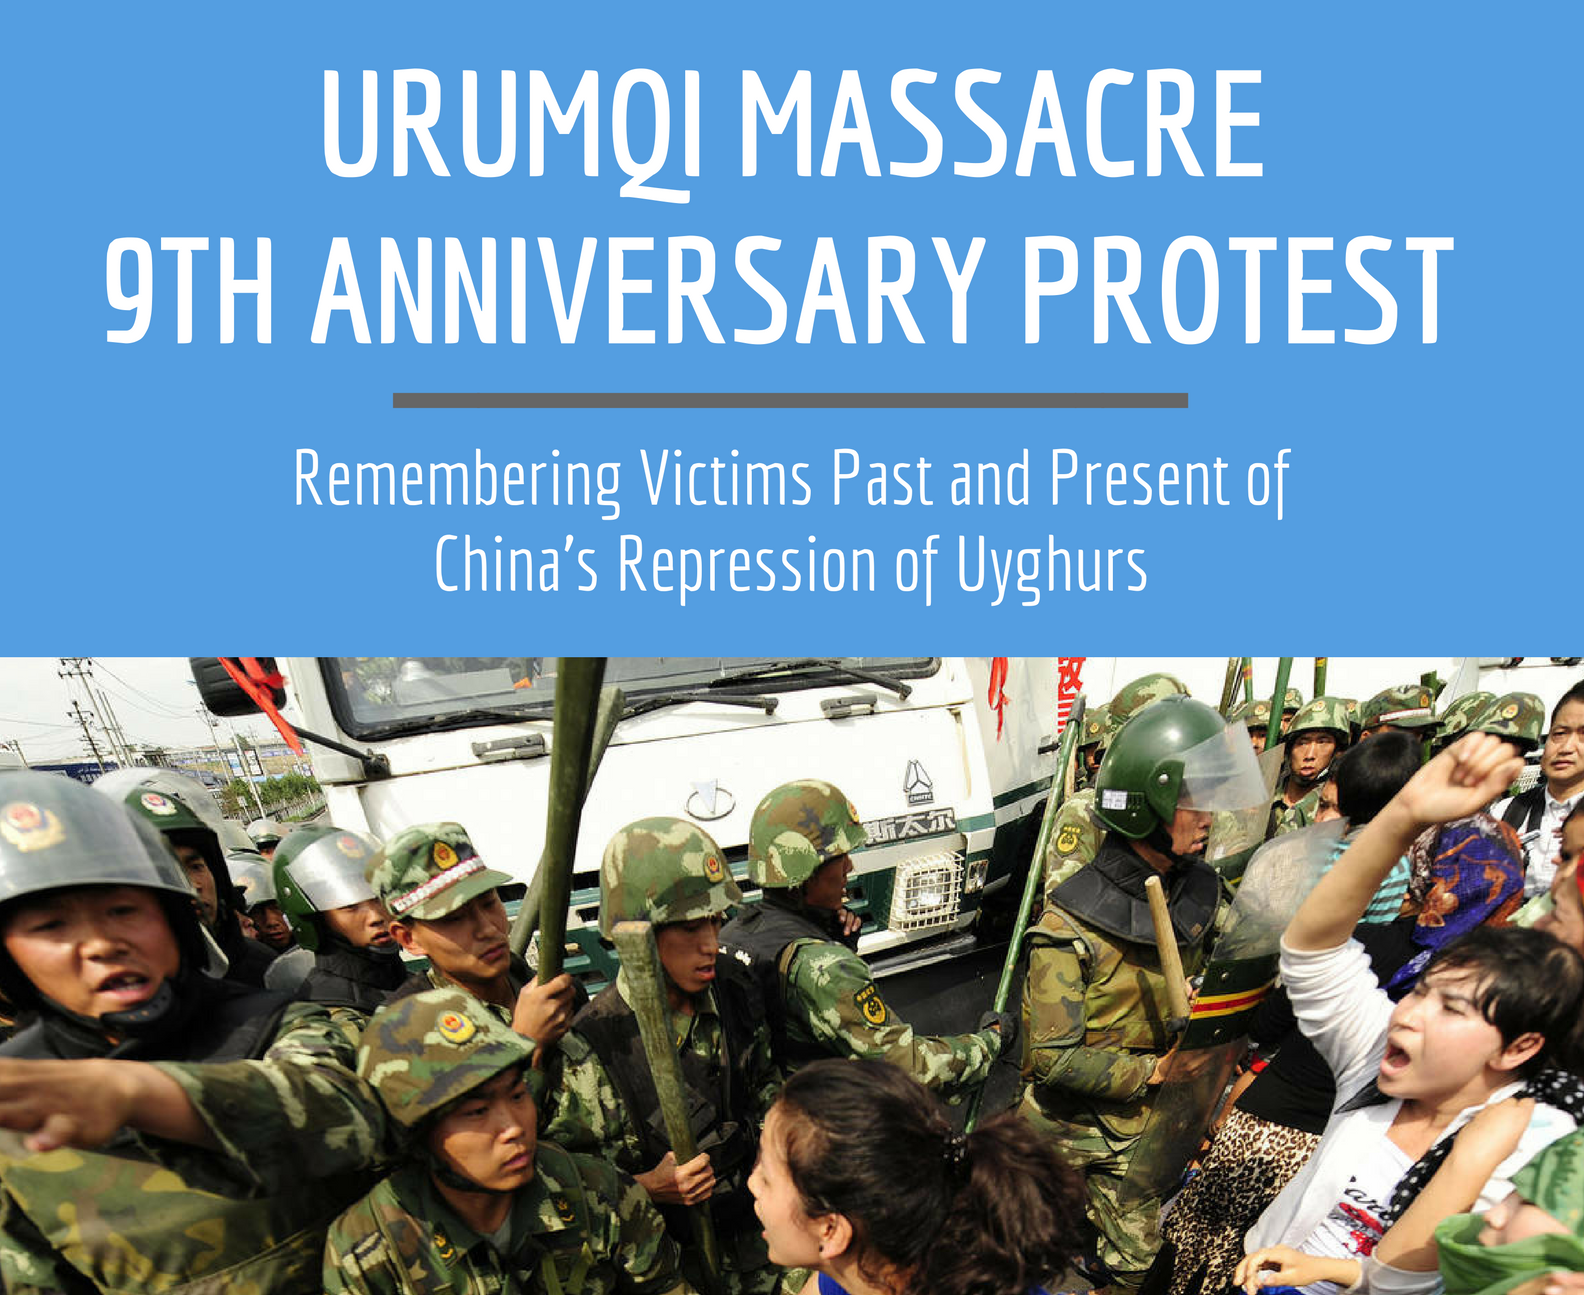 PRESS RELEASE: WUC Commemorates the 9th Anniversary of the Urumqi Massacre